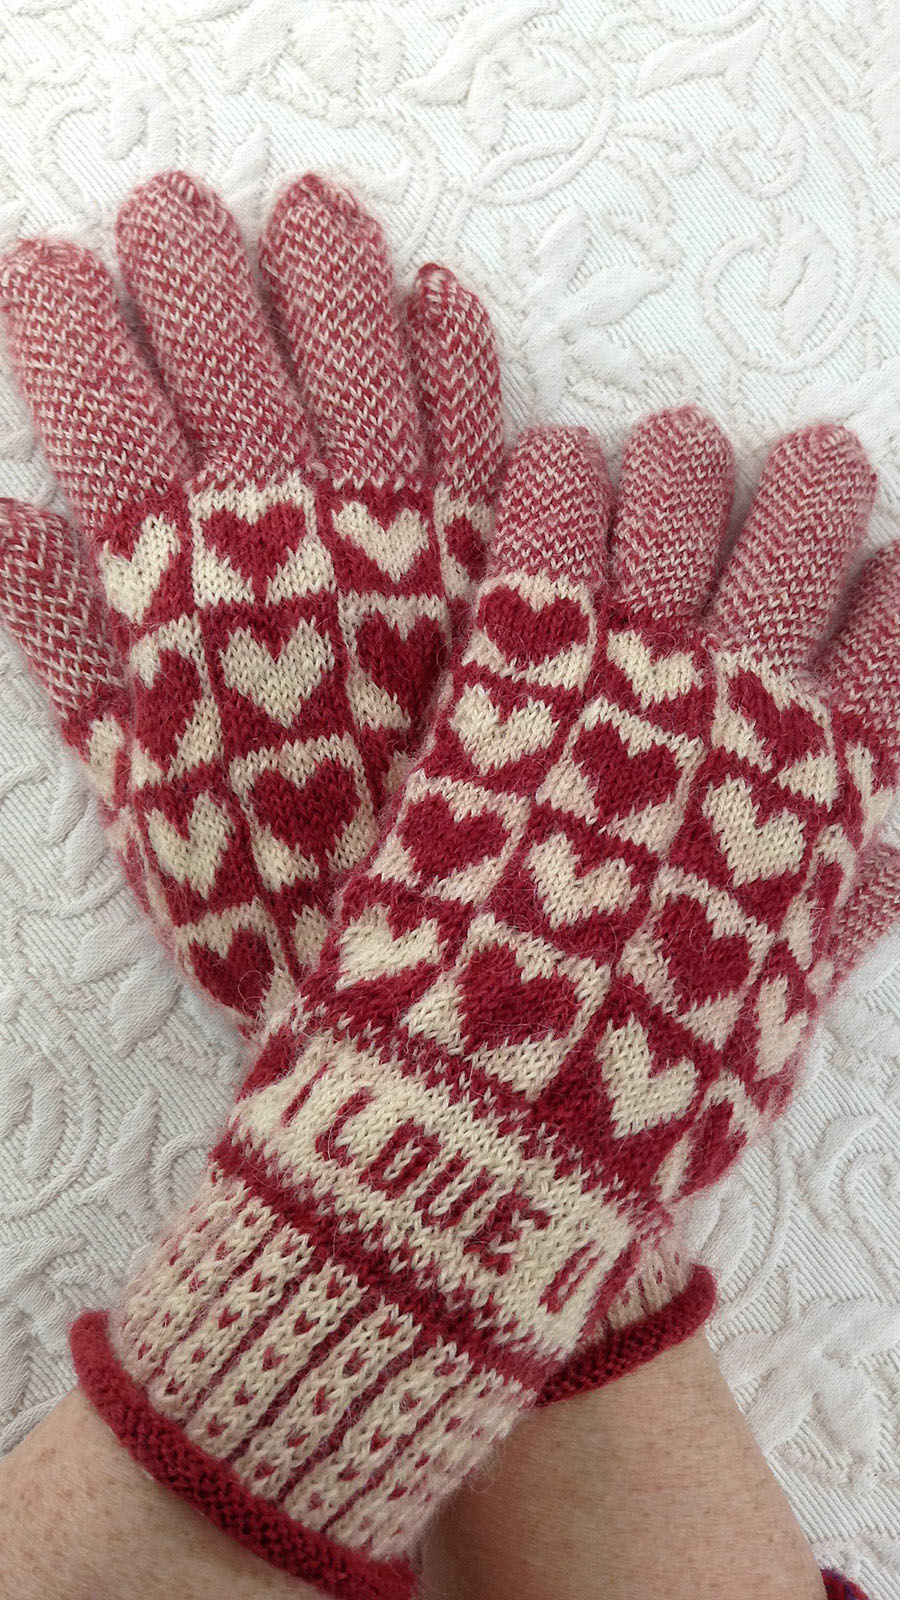 Sanquhar gloves  Knitting gloves